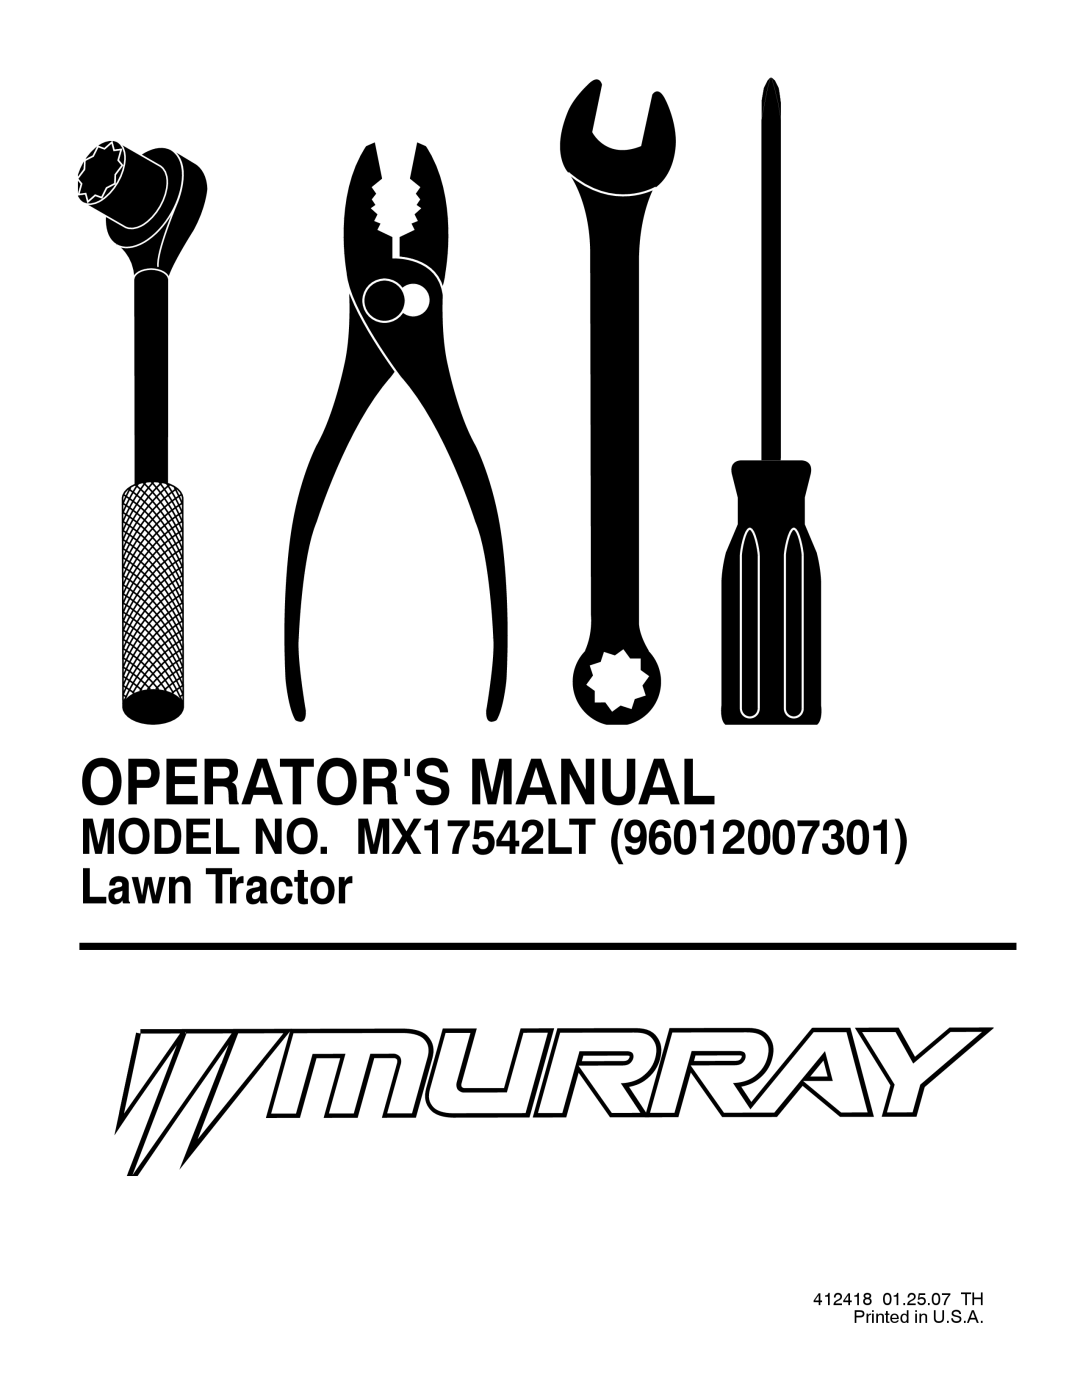 Murray manual Operators Manual, MODEL NO. MX17542LT 96012007301 Lawn Tractor 